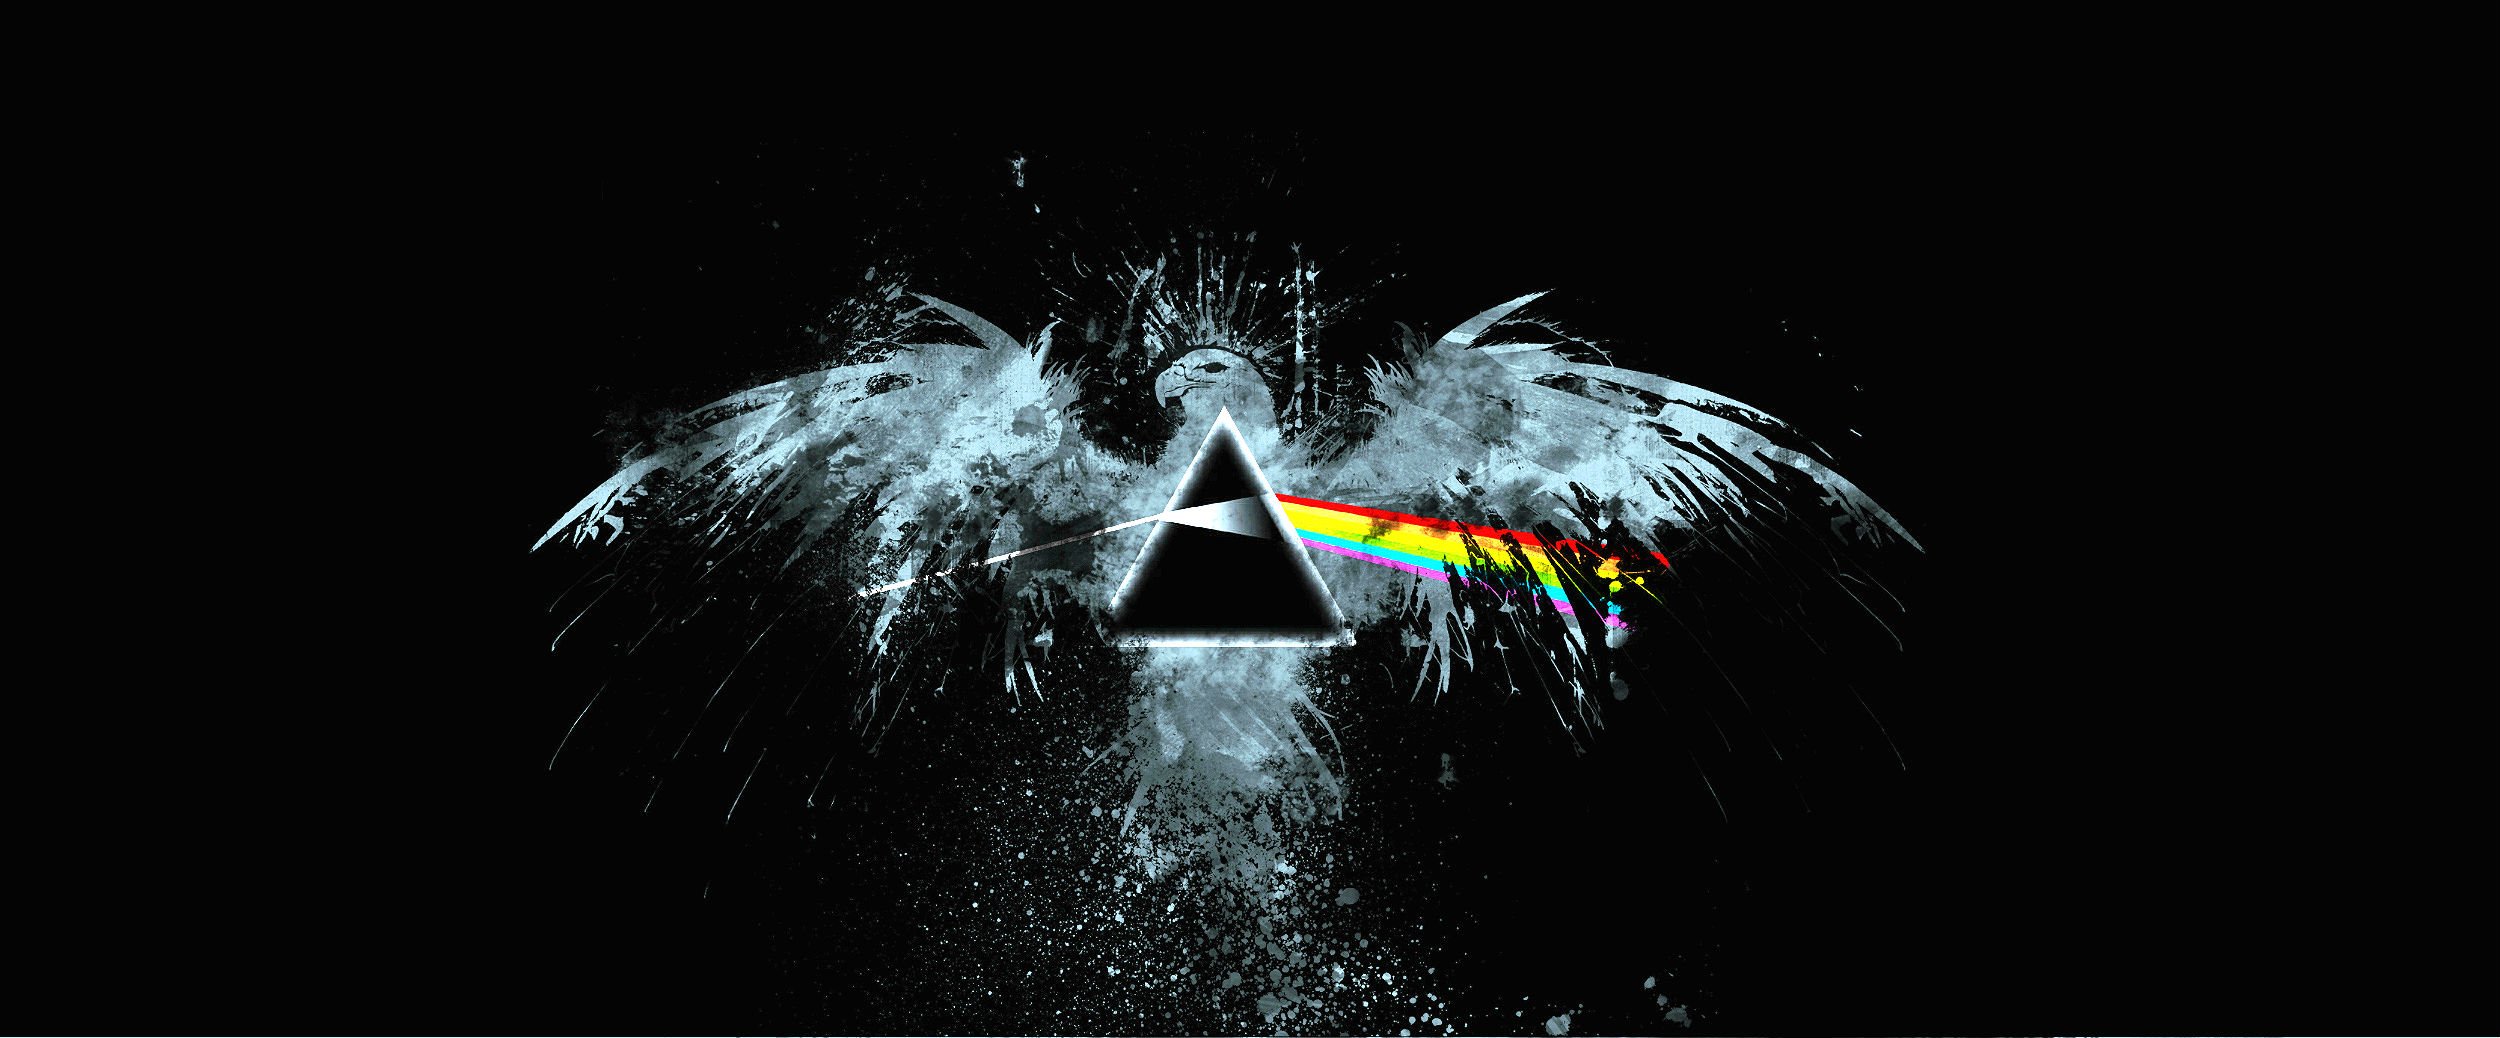 HD Pink Floyd Wallpapers | PixelsTalk.Net